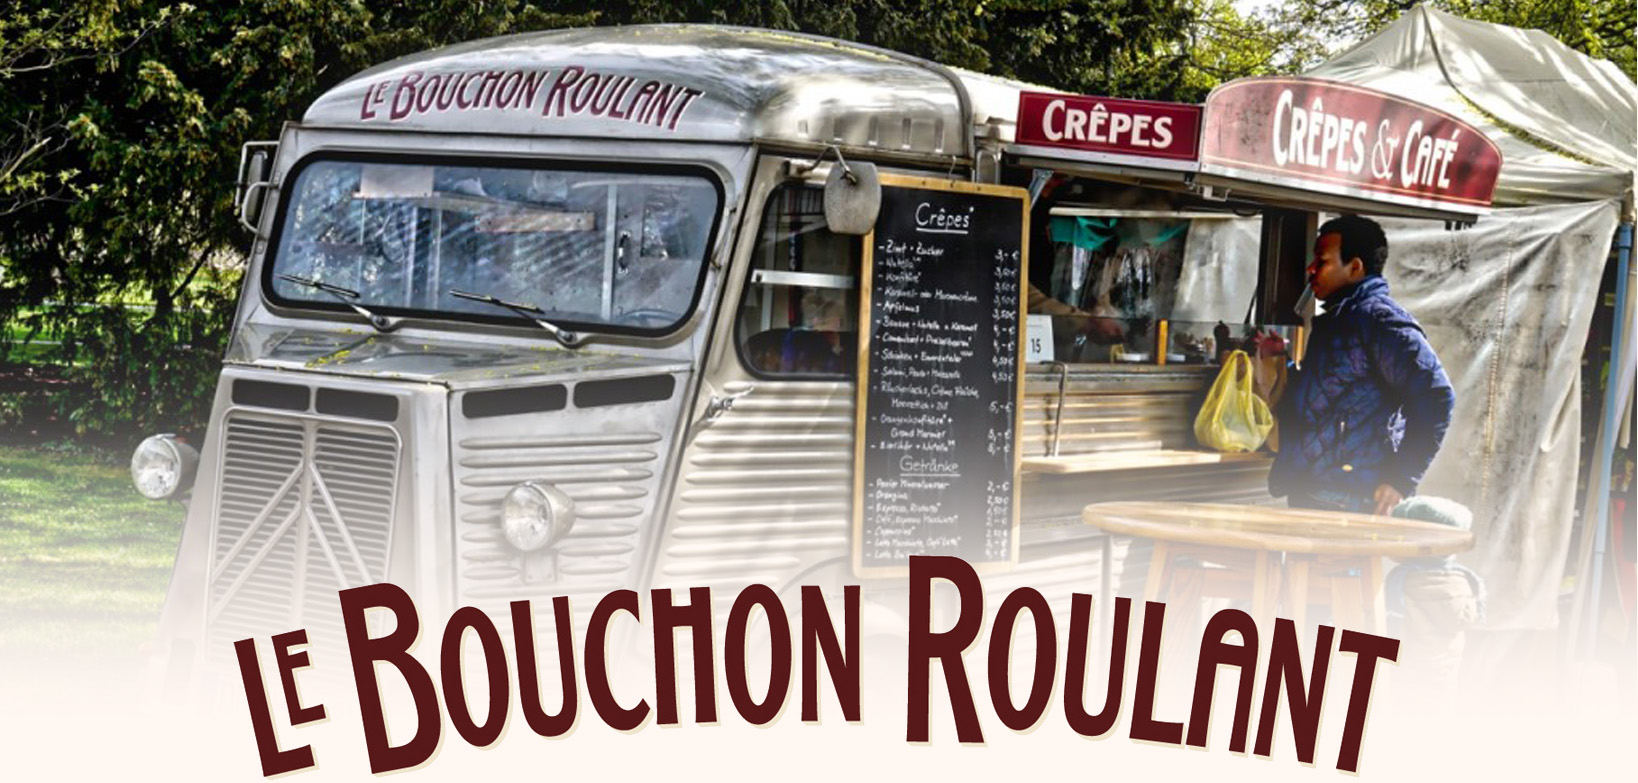 Le Bouchon-Roulant Catering Foodtruck Crêpes Flammkuchen Café